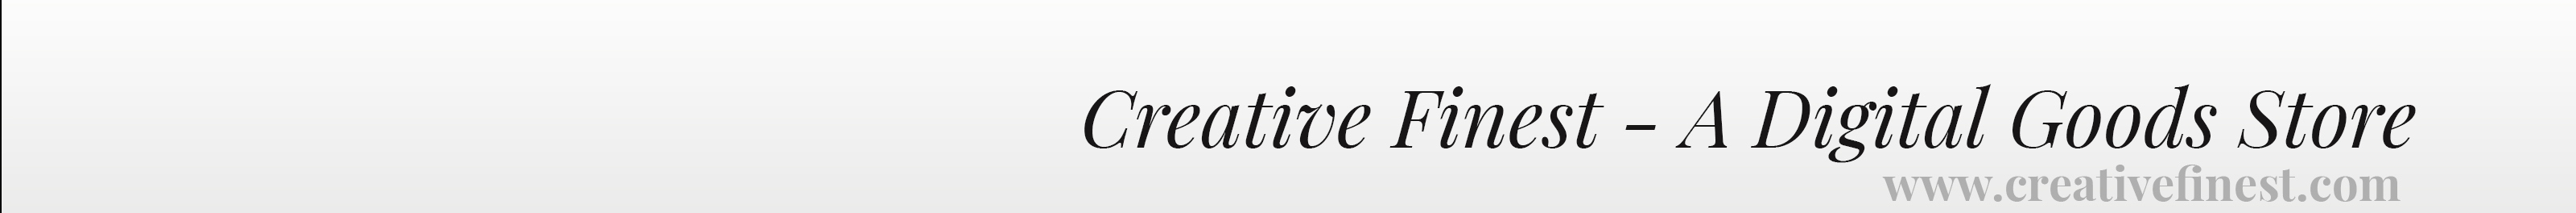 Creative Finest's profile banner